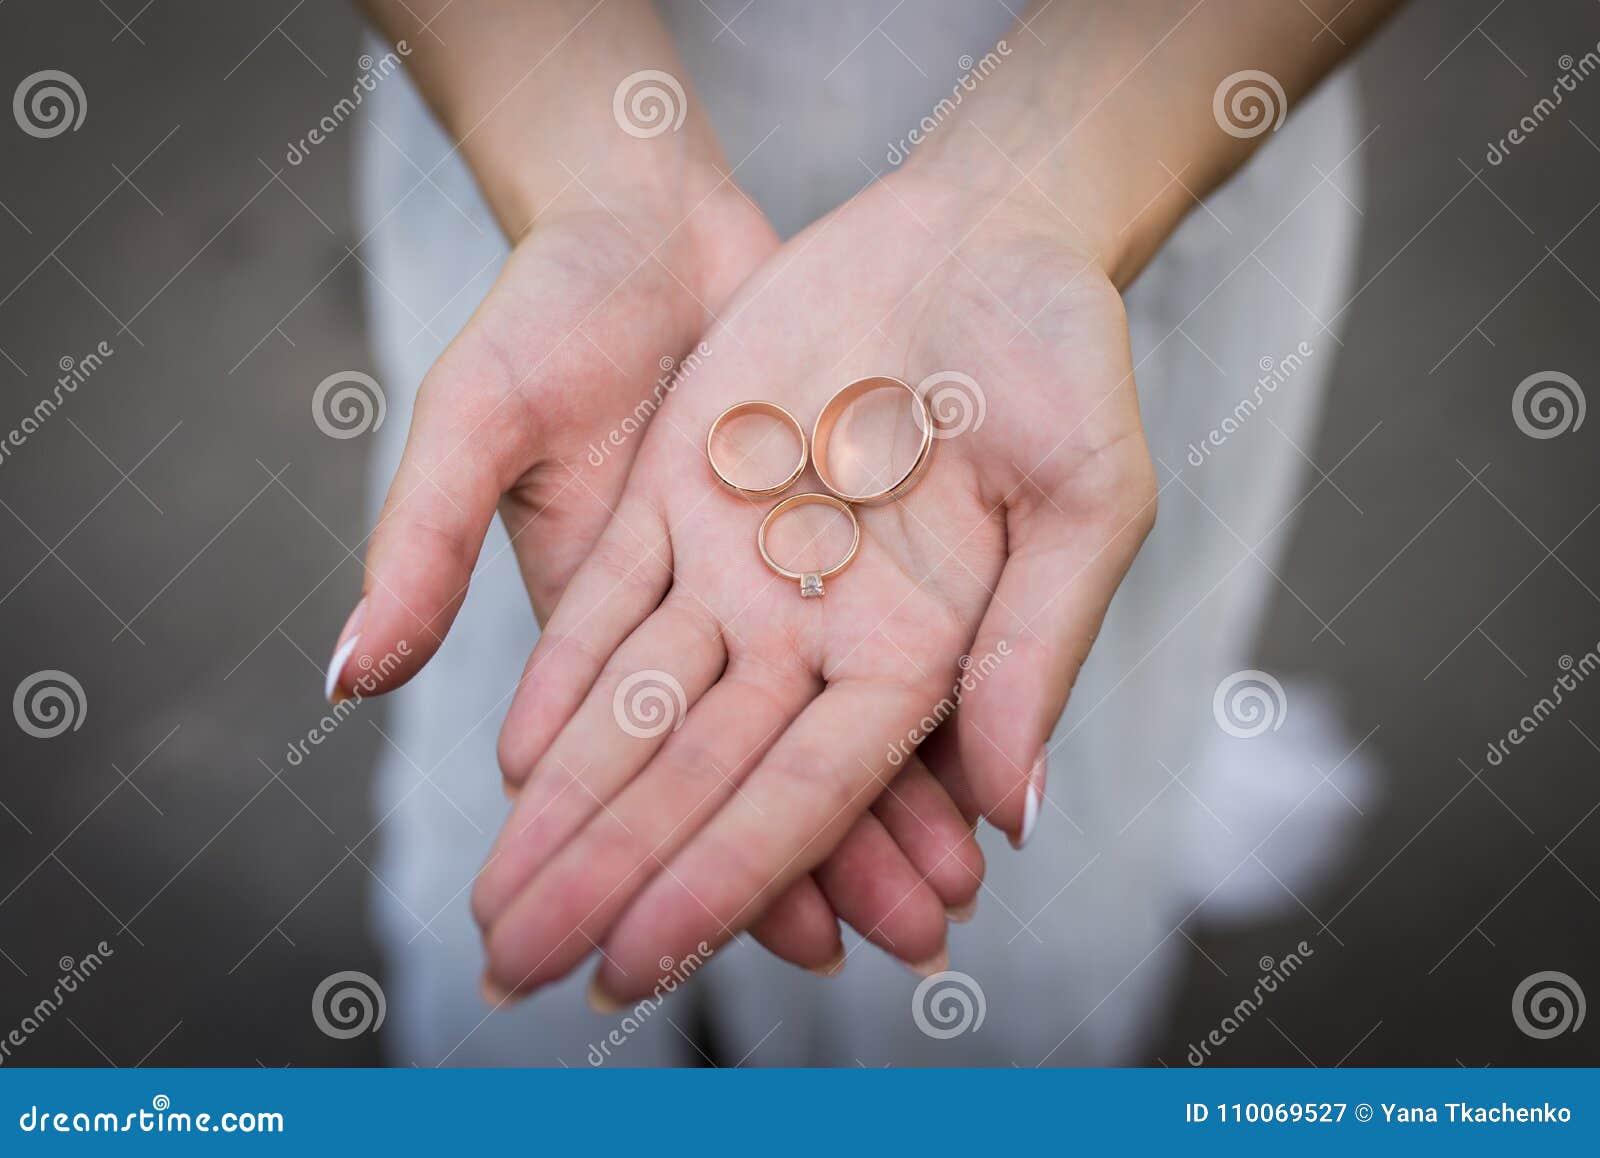 Dos Anillos De Bodas Oro Y Un Anillo De Compromiso Con El Diamante Están Mintiendo En Manos De La Mujer Imagen de archivo - Imagen de boda, case: 110069527